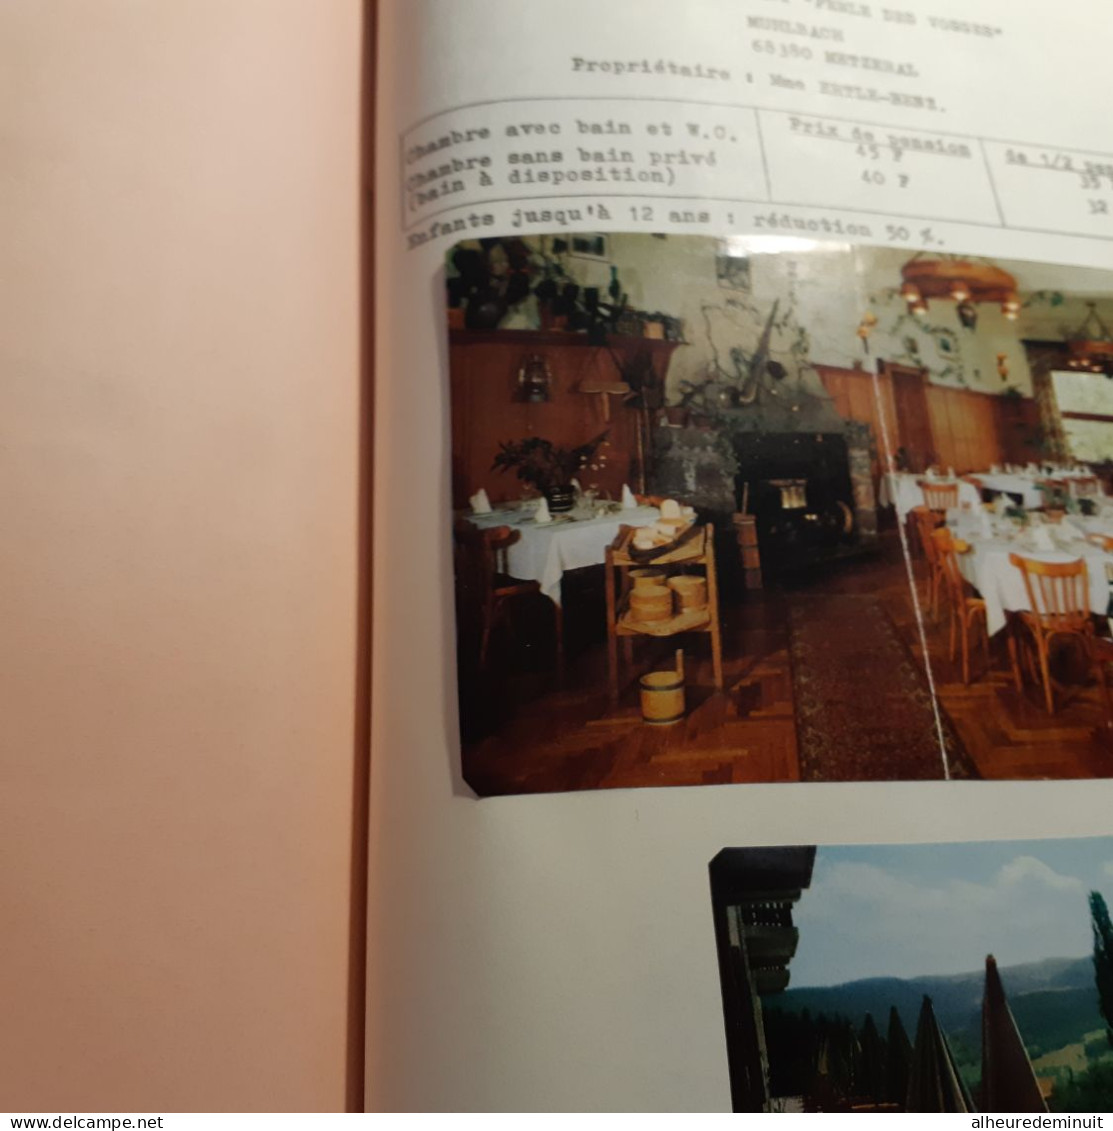 ETUDE TOURISTIQUE VALLEE DE MUNSTER"1974"Carte de vallée de MUNSTER"Du TANET"courbes isochrones"photos HOTELS"ALSACE...